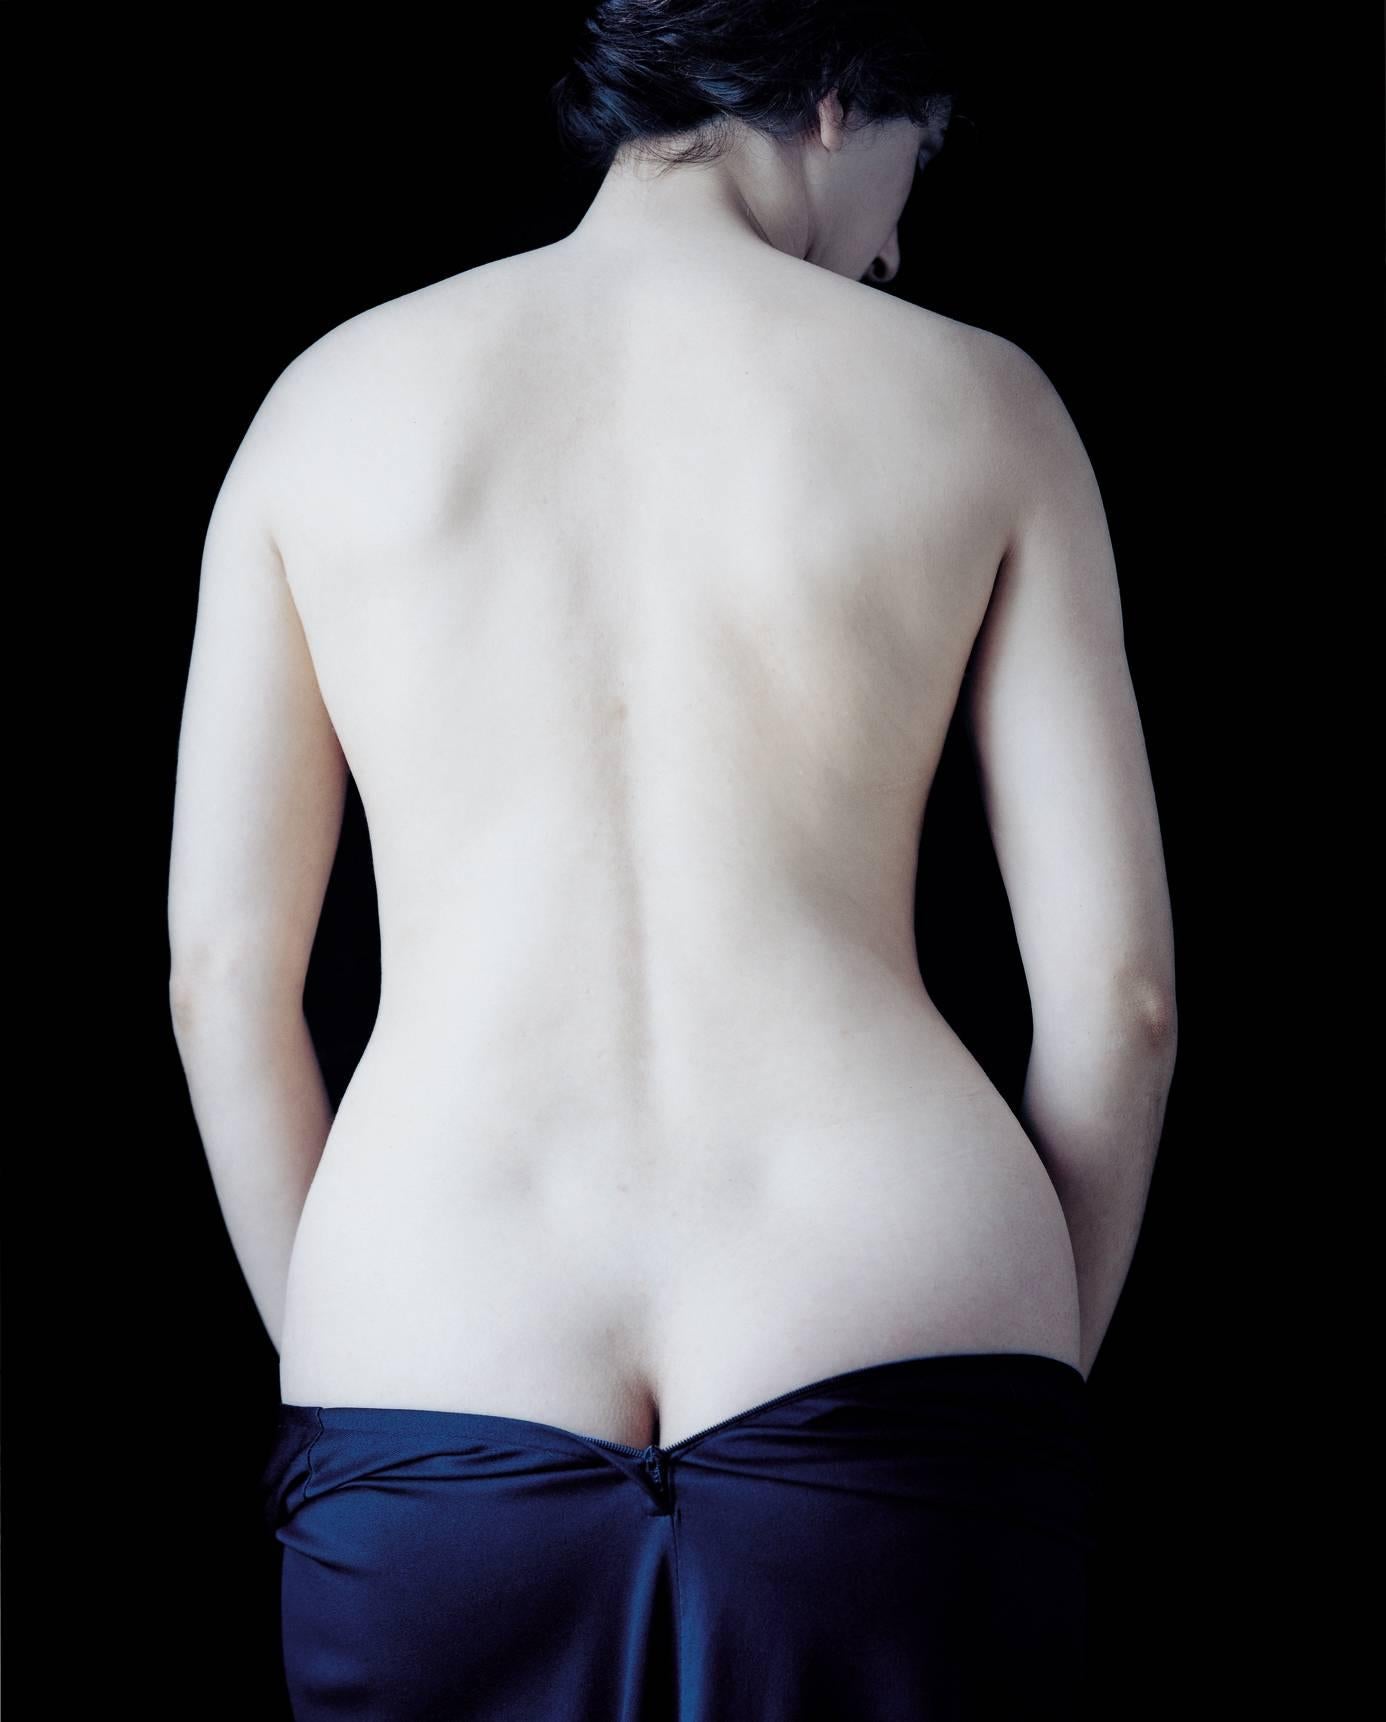 Carla van de Puttelaar Nude Photograph - Untitled